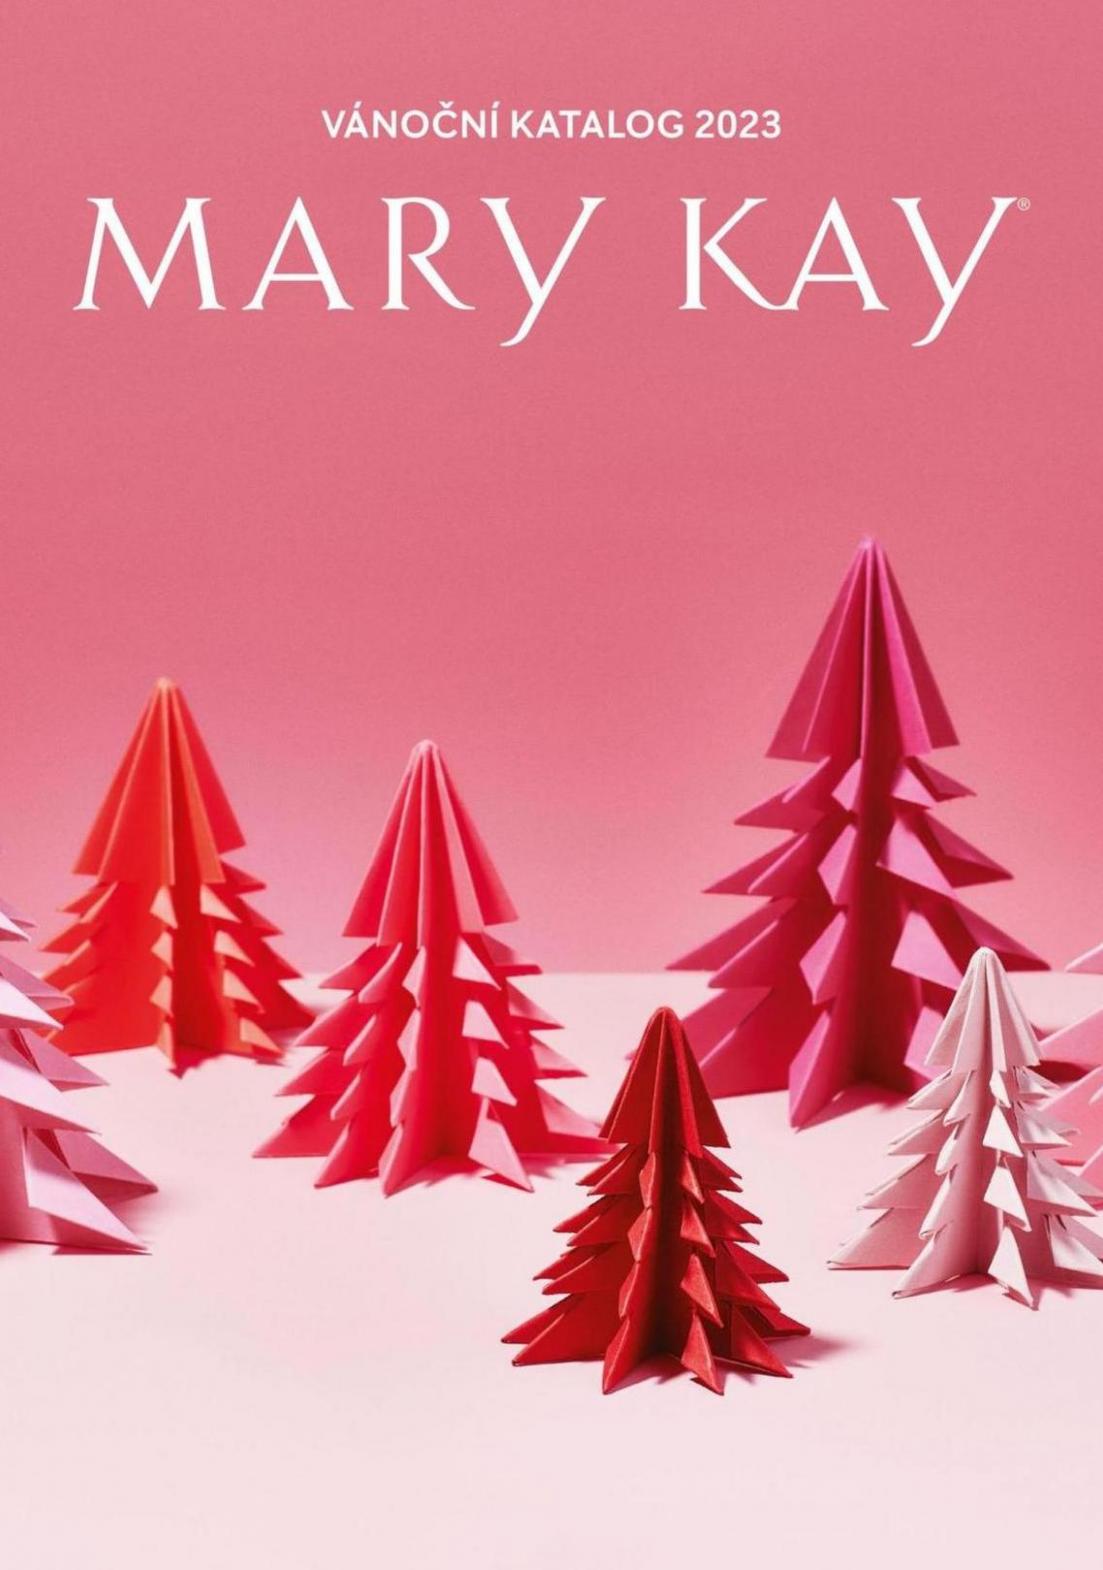 Vánoční katalog 2023. Mary Kay (2023-12-25-2023-12-25)